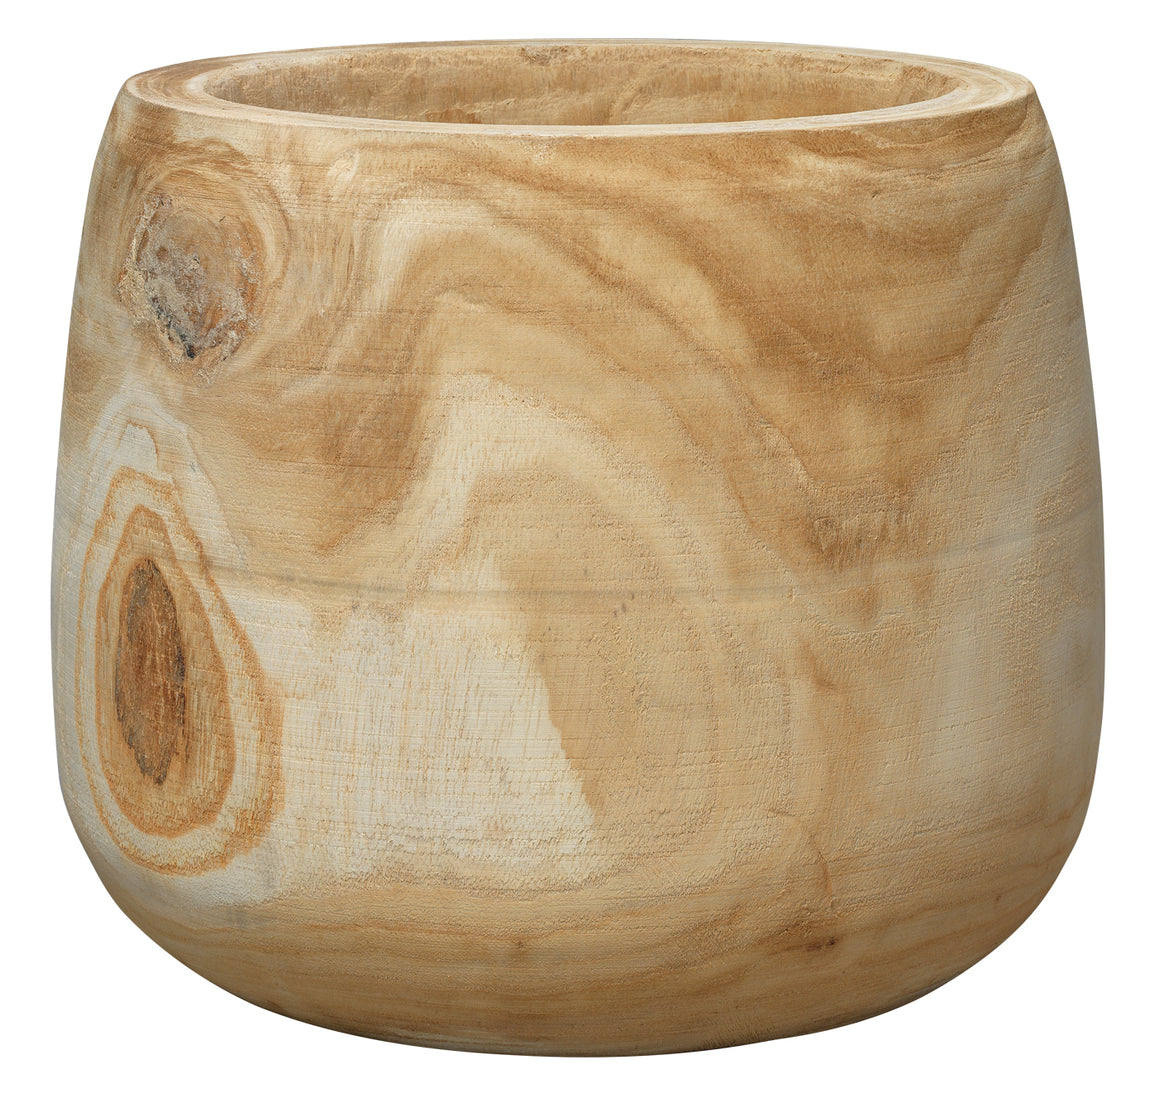 Brea Wooden Vase in Natural Wood